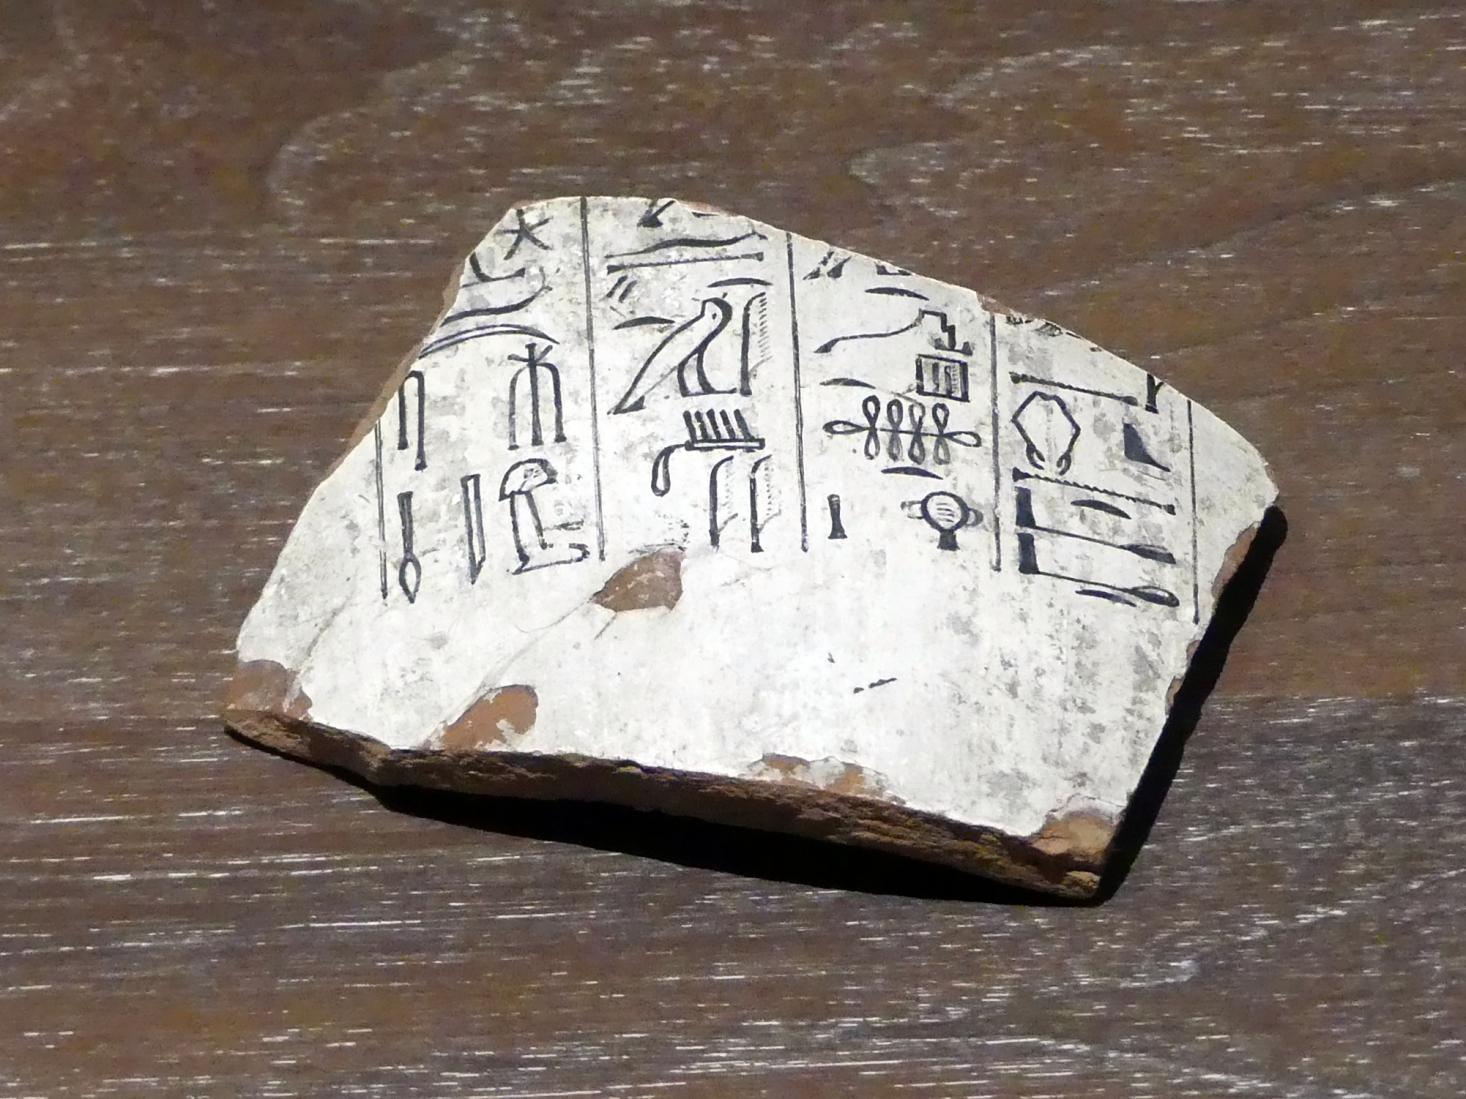 Teil einer Kanope (Eingeweidekrug) mit Gebet in hieroglyphischer Schreibung, 19. Dynastie, 953 - 887 v. Chr., 1200 v. Chr., Bild 1/2